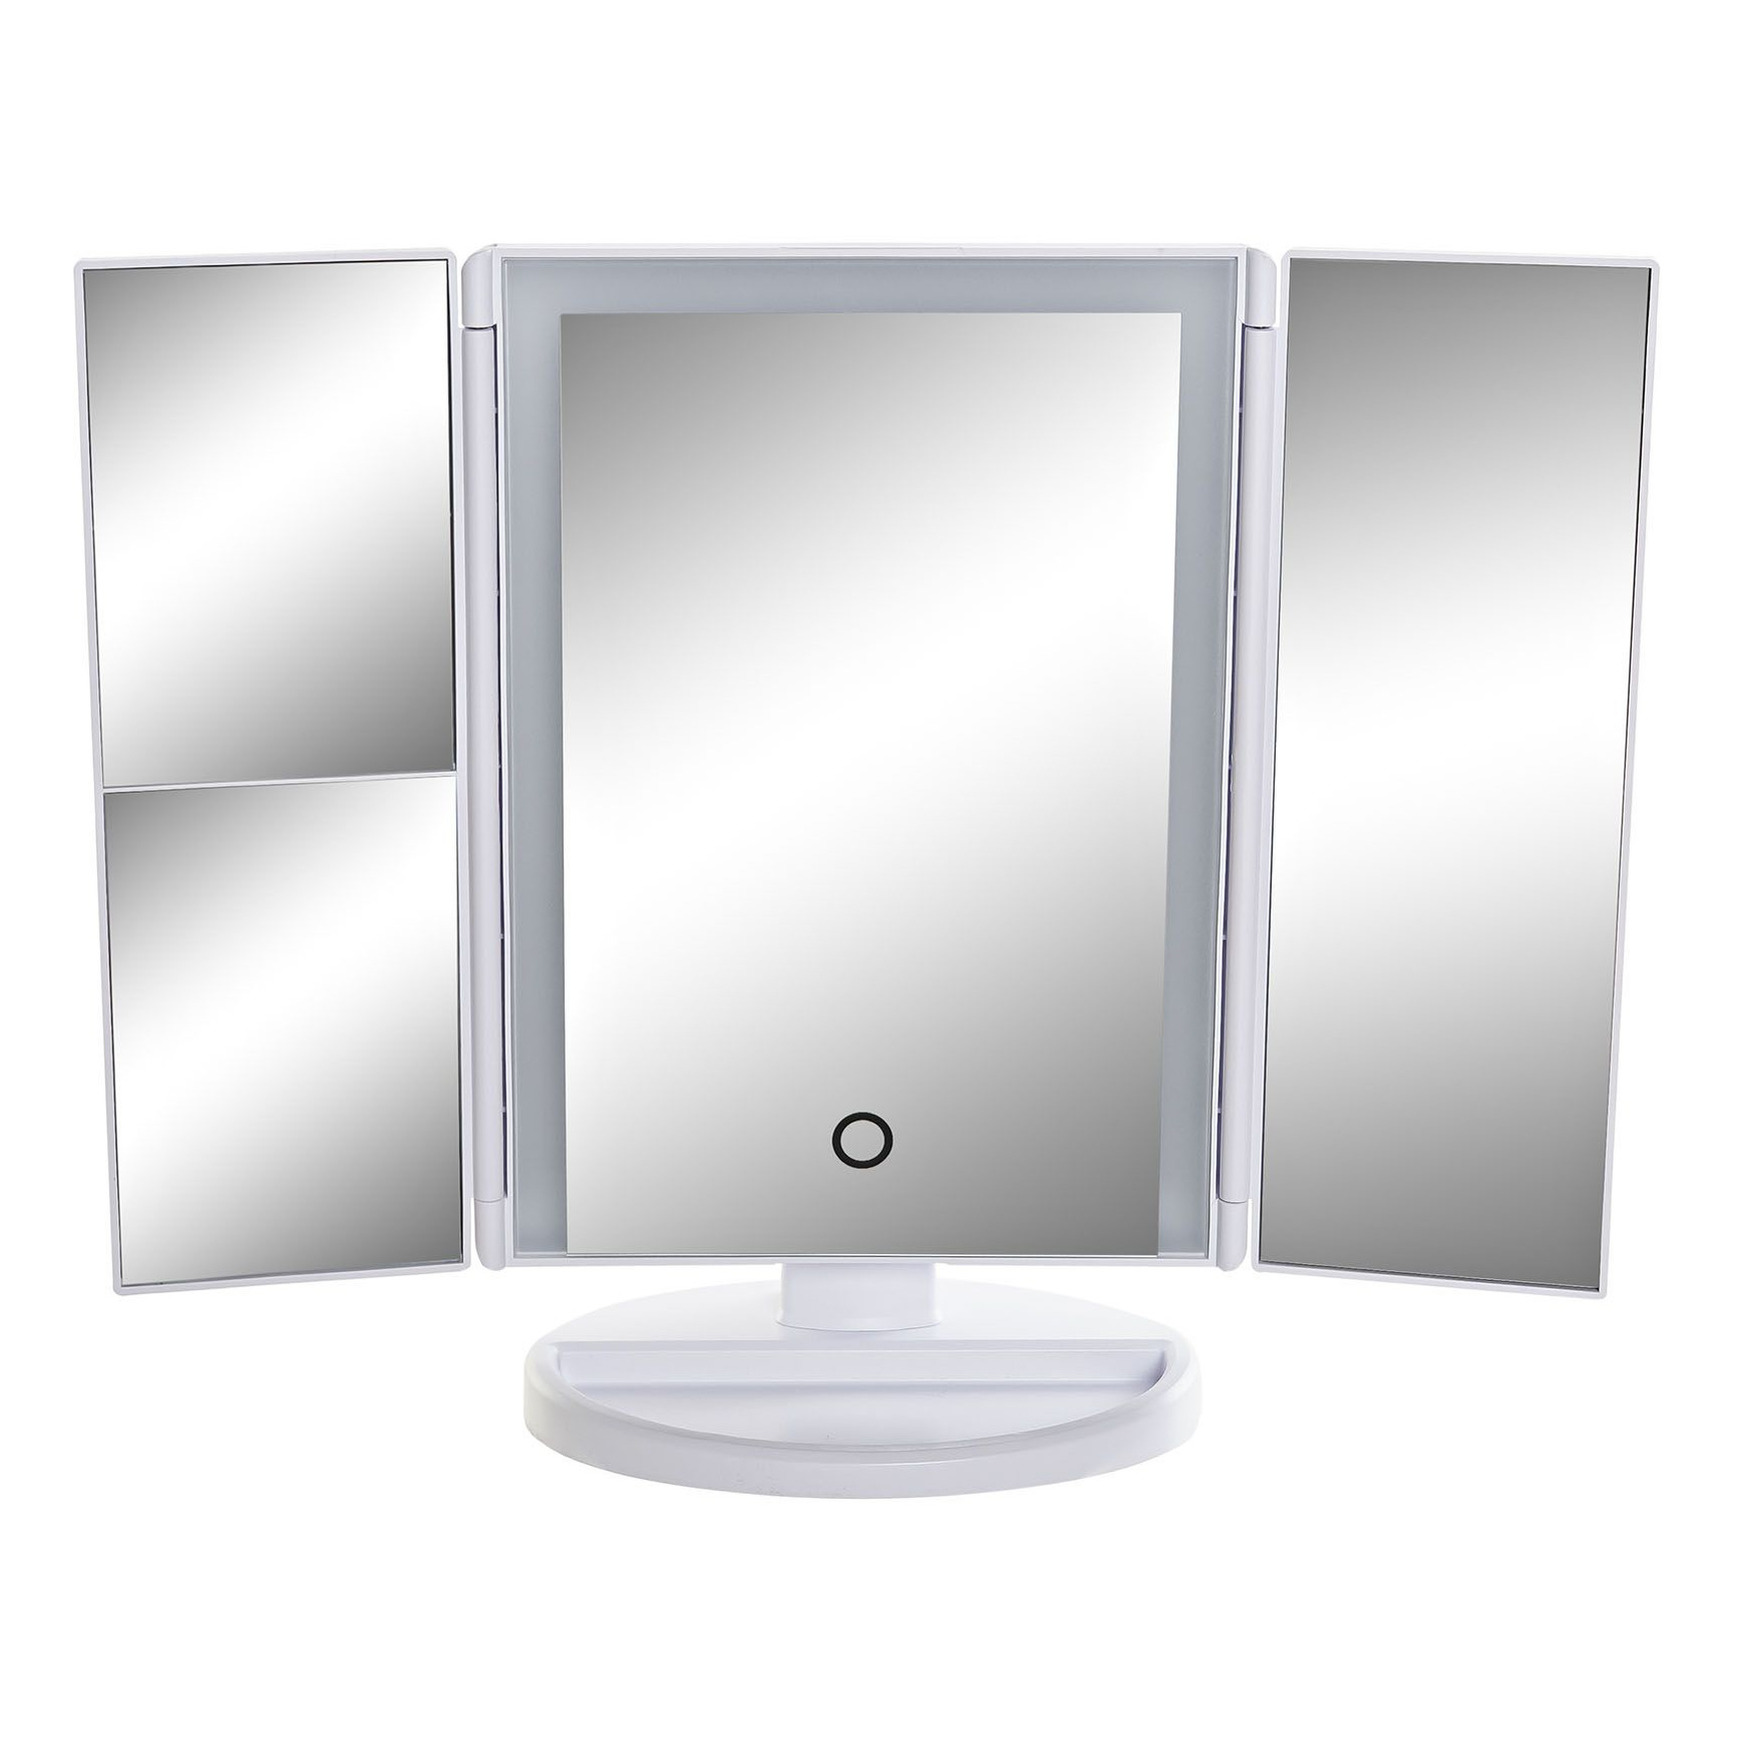 Badkamerspiegel / make-up spiegel met LED verlichting 34 x 11 x 28